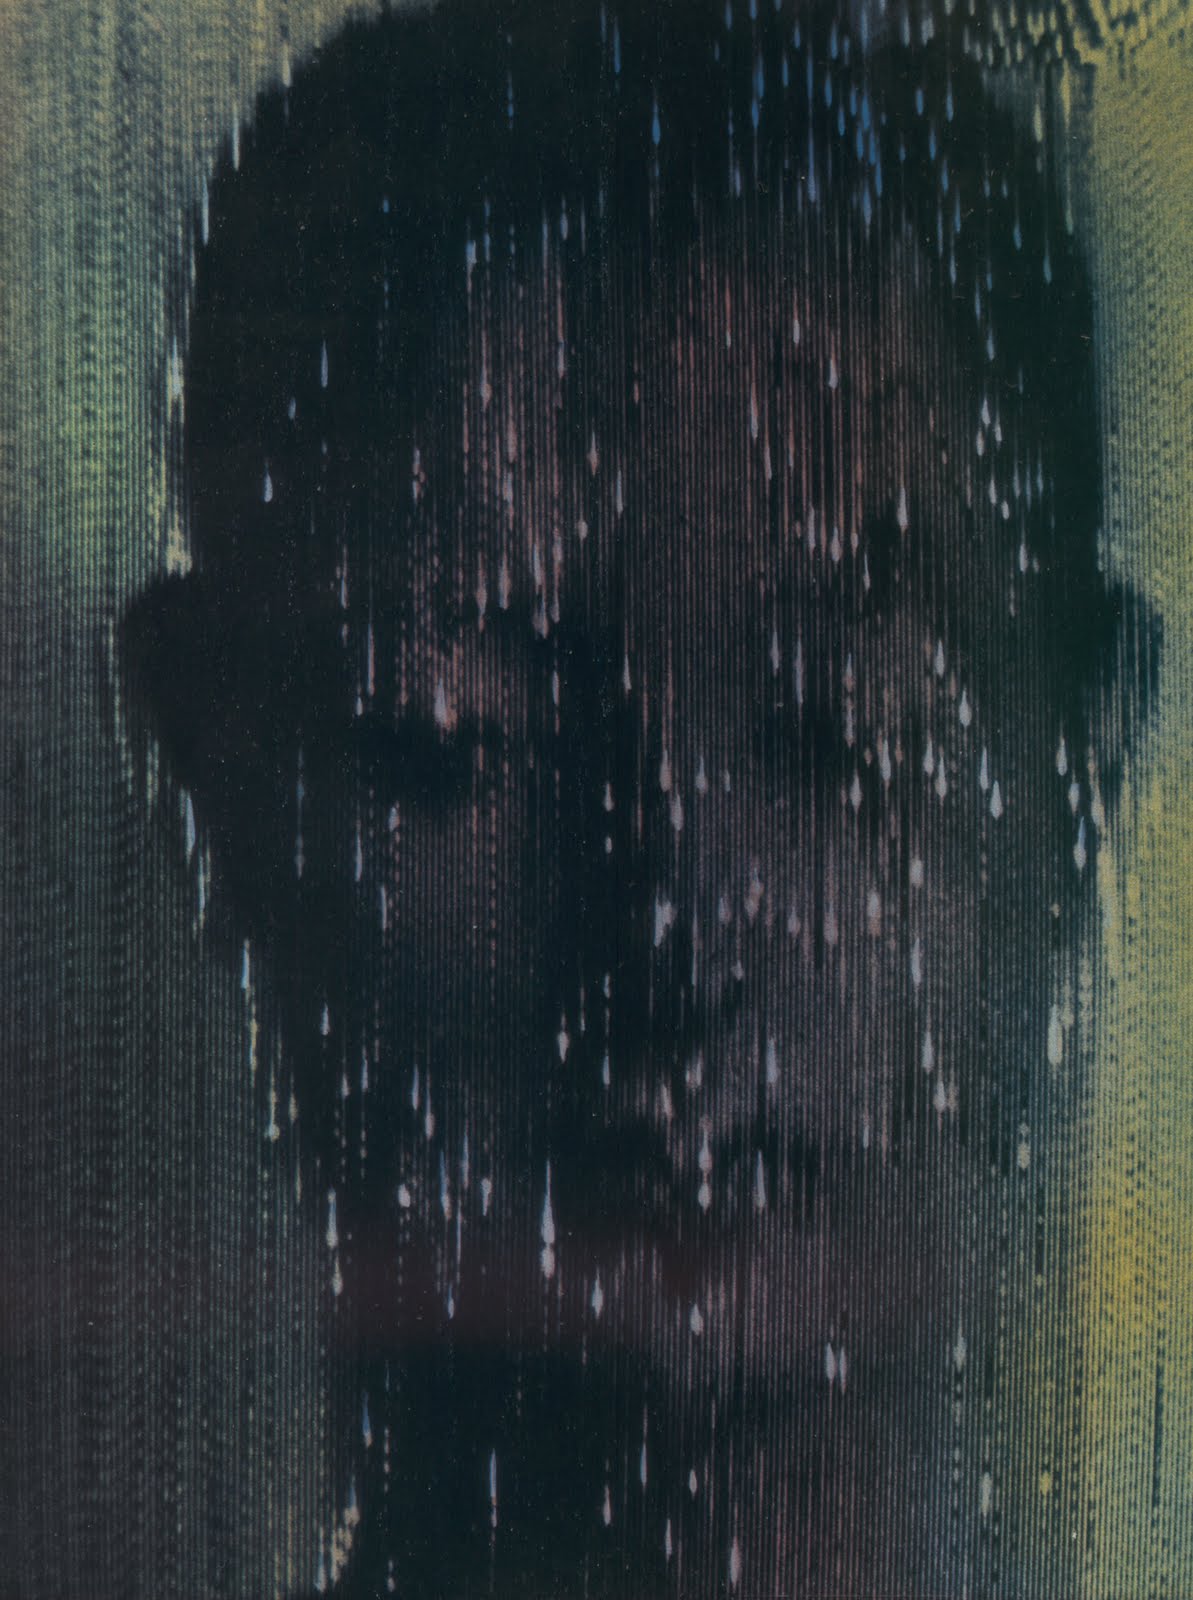 Hubert Kretzschmar : For Rautavaara's Case by Philip K. Dick, 1983